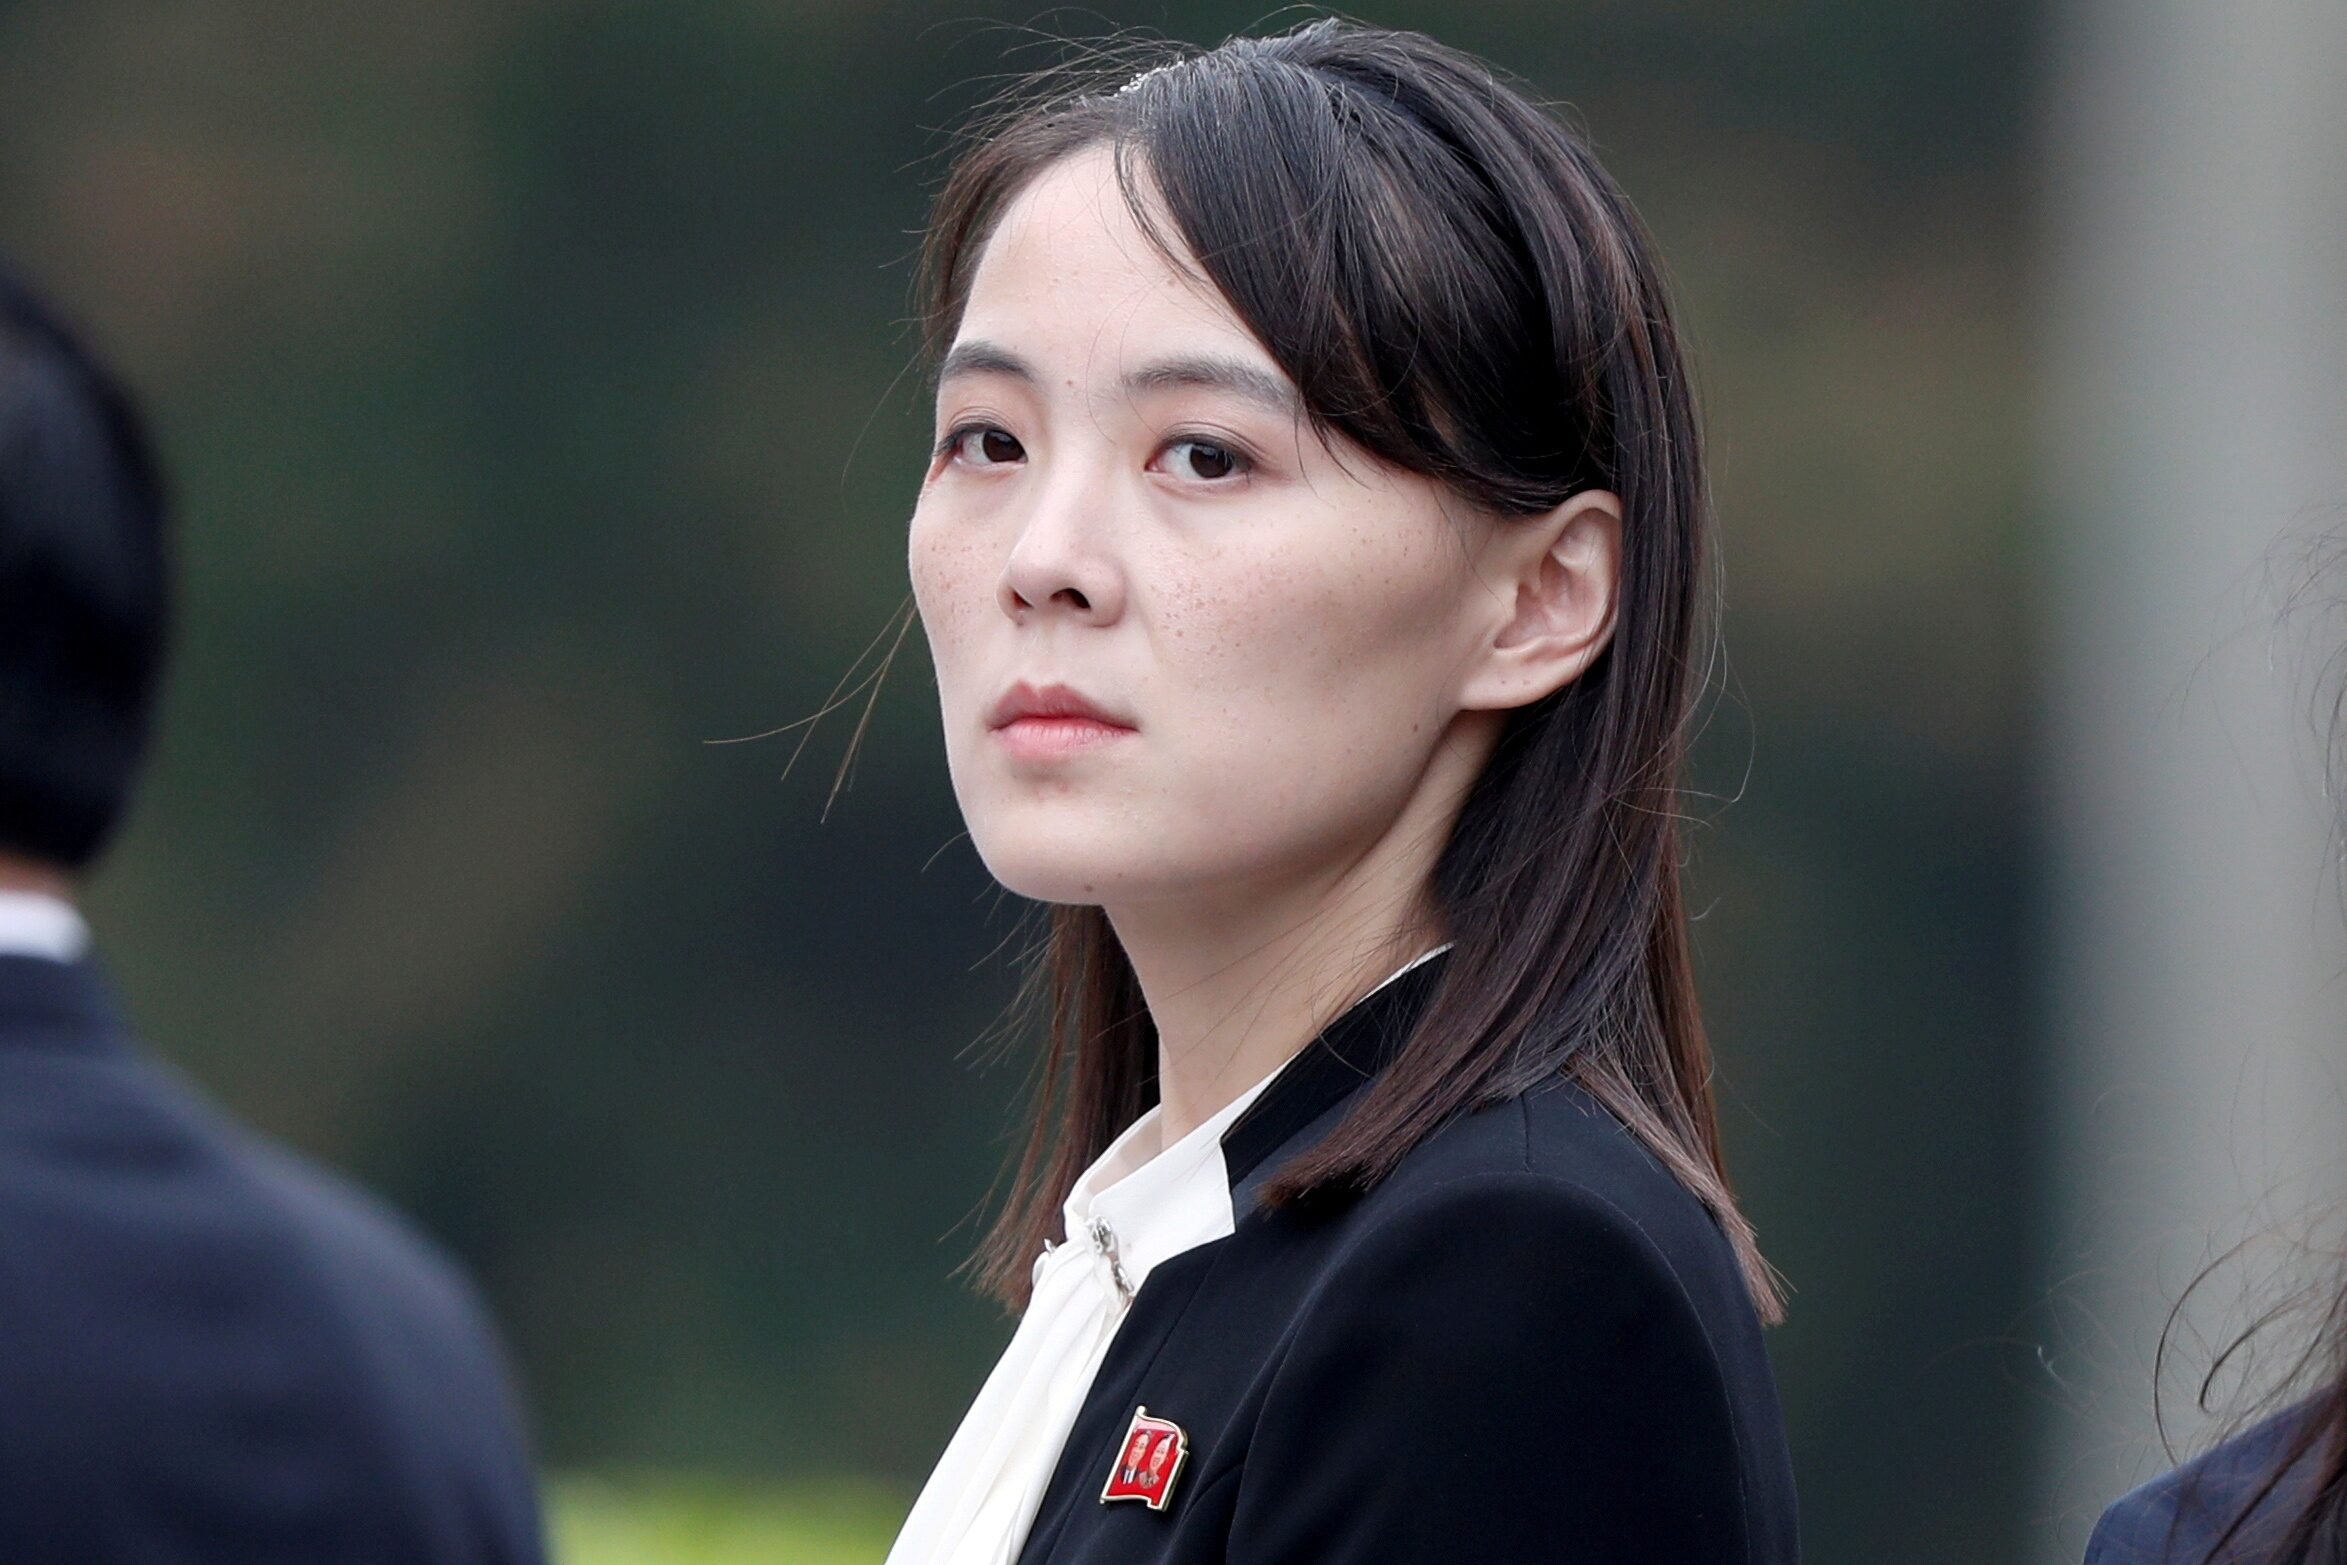 คิม โย จอง น้องสาวผู้นำโสมแดง เตือนมะกัน-โสมขาว  เจอภัยความมั่นคงหากเดินหน้าซ้อมรบ